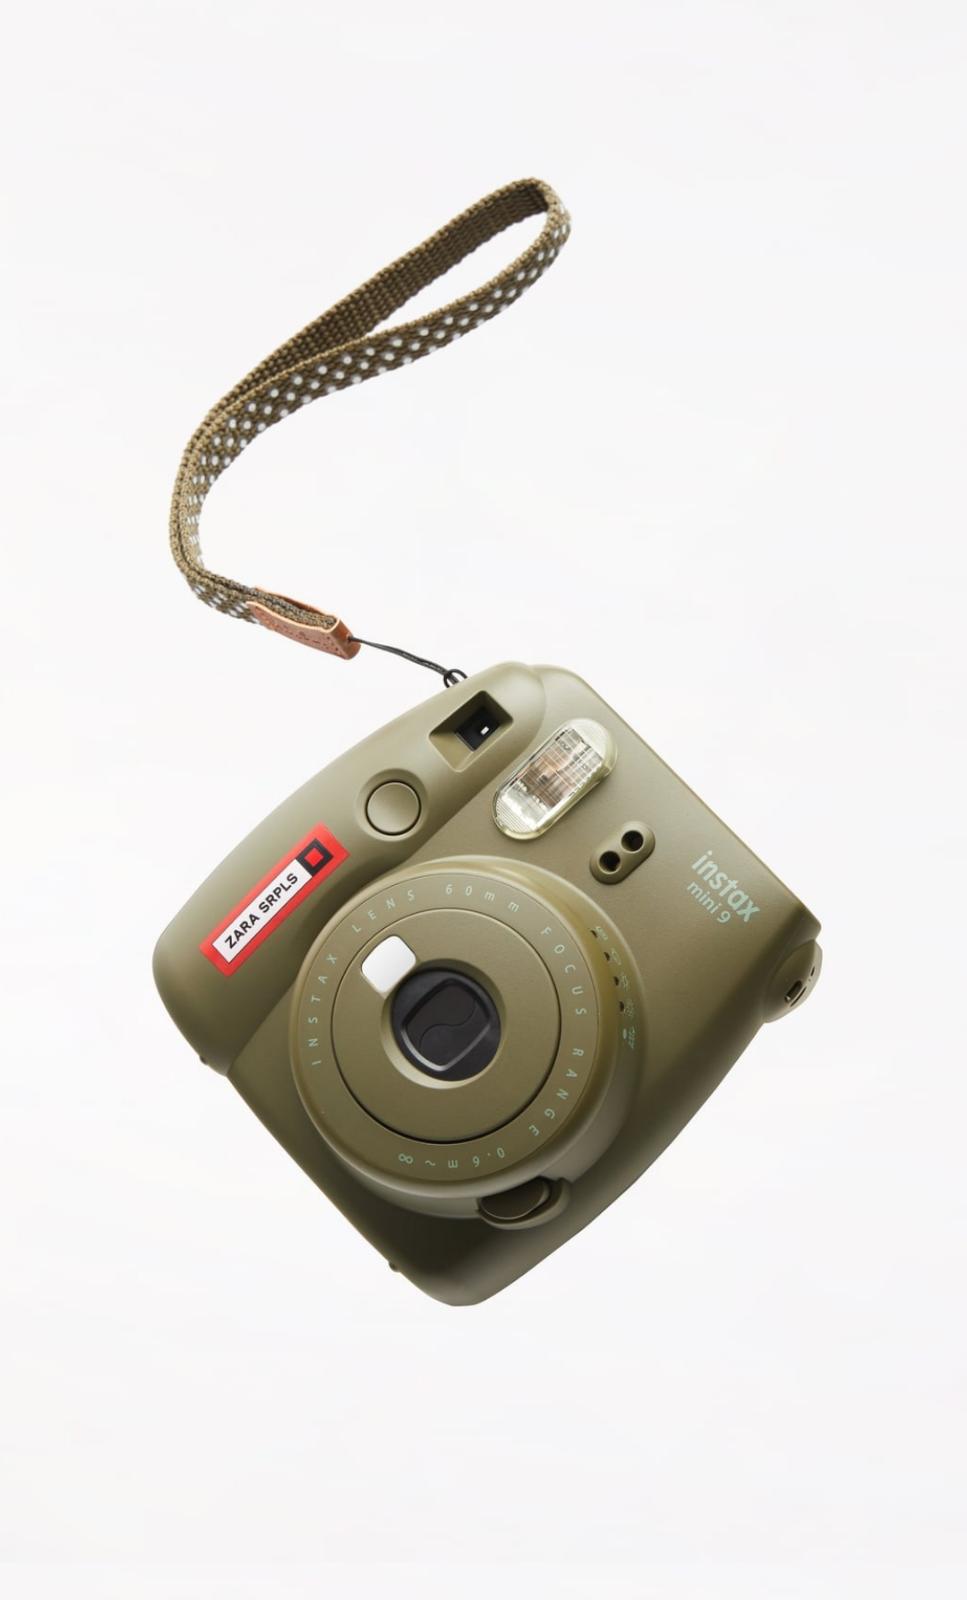 Pack con cámara Fujifilm Instax mini 9 y papel fotográfico